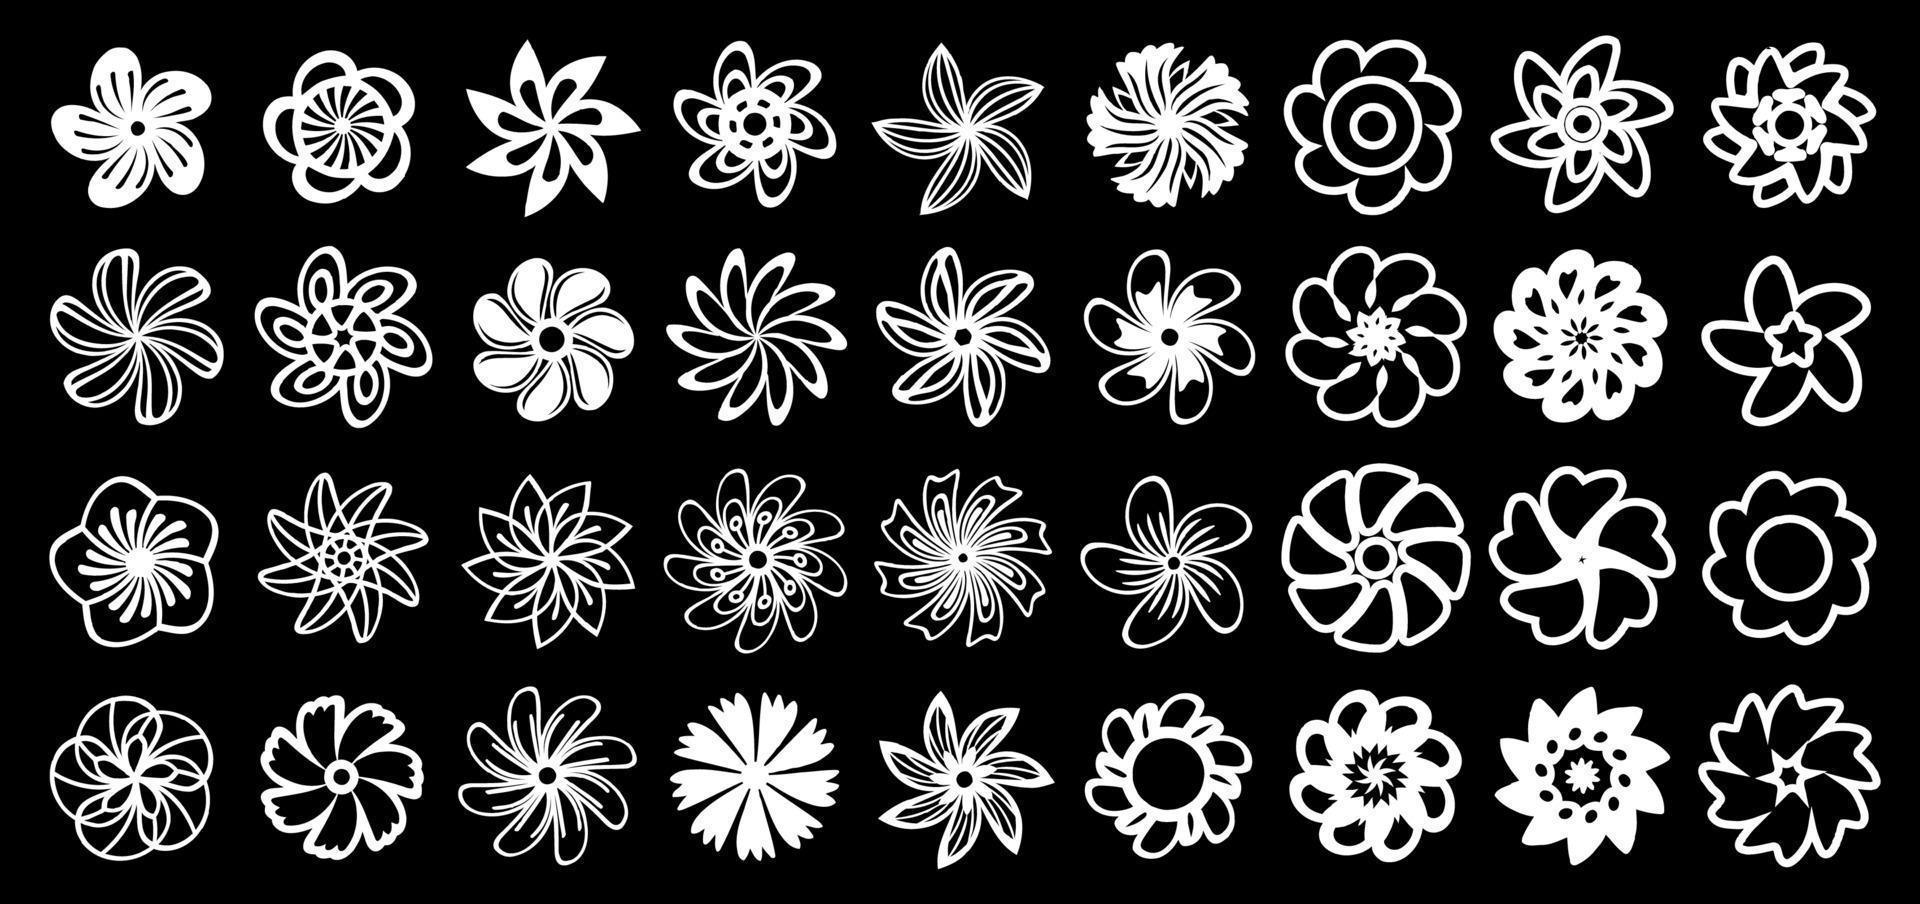 wit bloem pictogrammen Aan een zwart achtergrond, lijn kunst decoratief ontwerp elementen, bloemen illustraties verzameling. vector